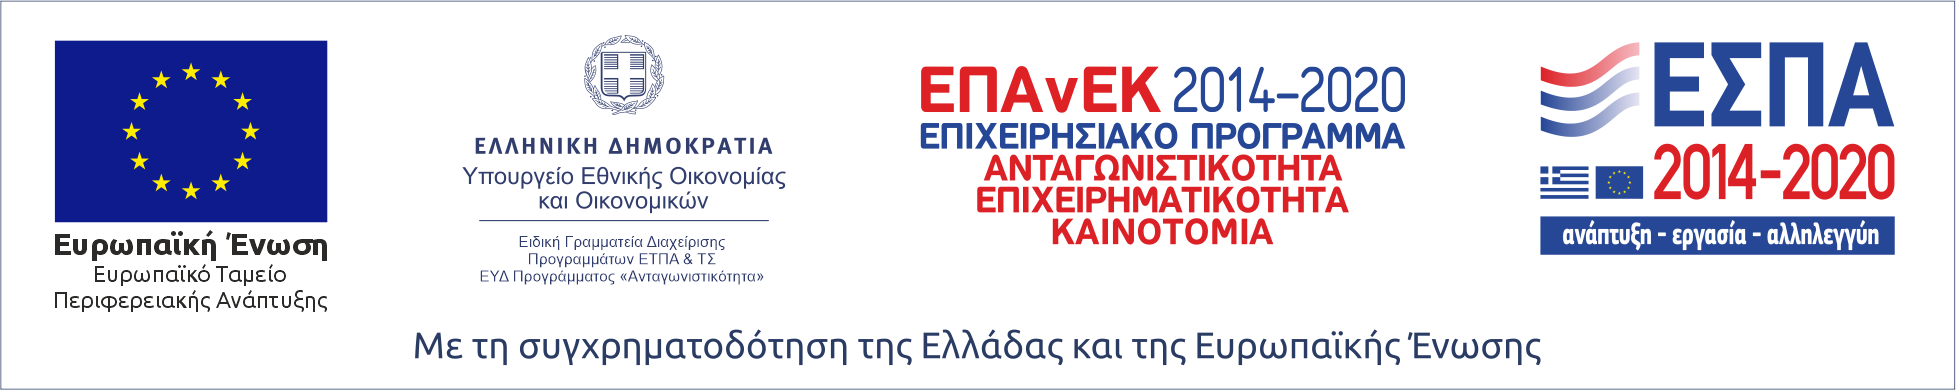 ΕΣΠΑ, λογότυπα ευρωπαϊκών και ελληνικών προγραμμάτων συνεργασίας και ανάπτυξης για την περίοδο 2014-2020